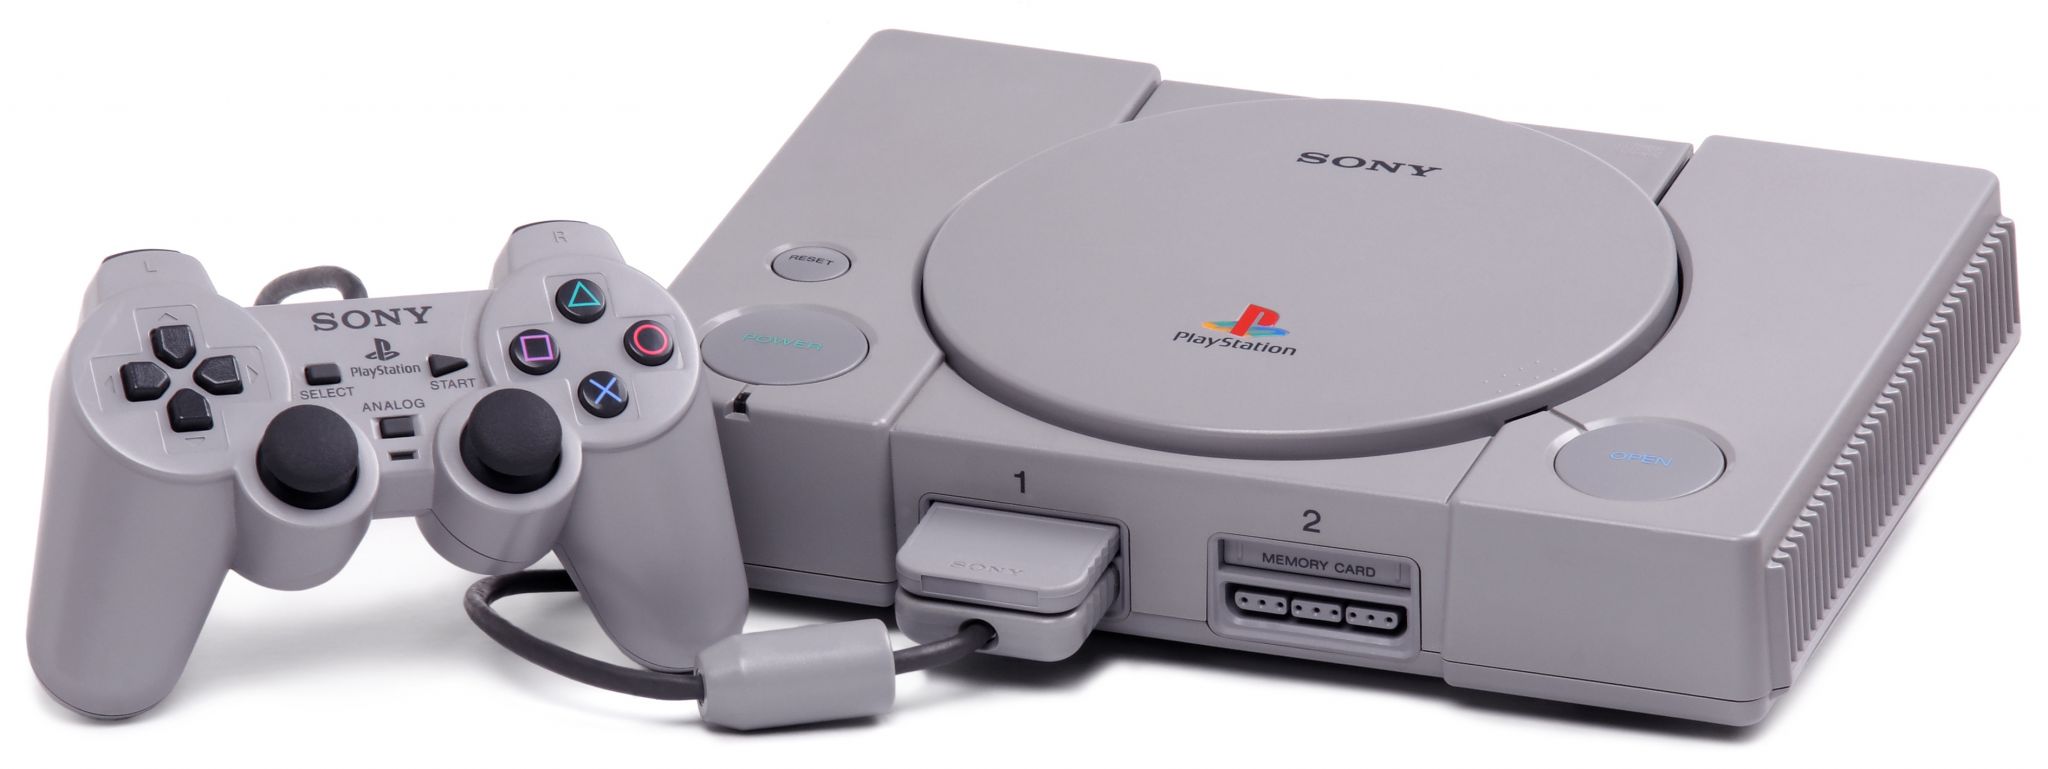 PlayStation: La evolución del control de Sony